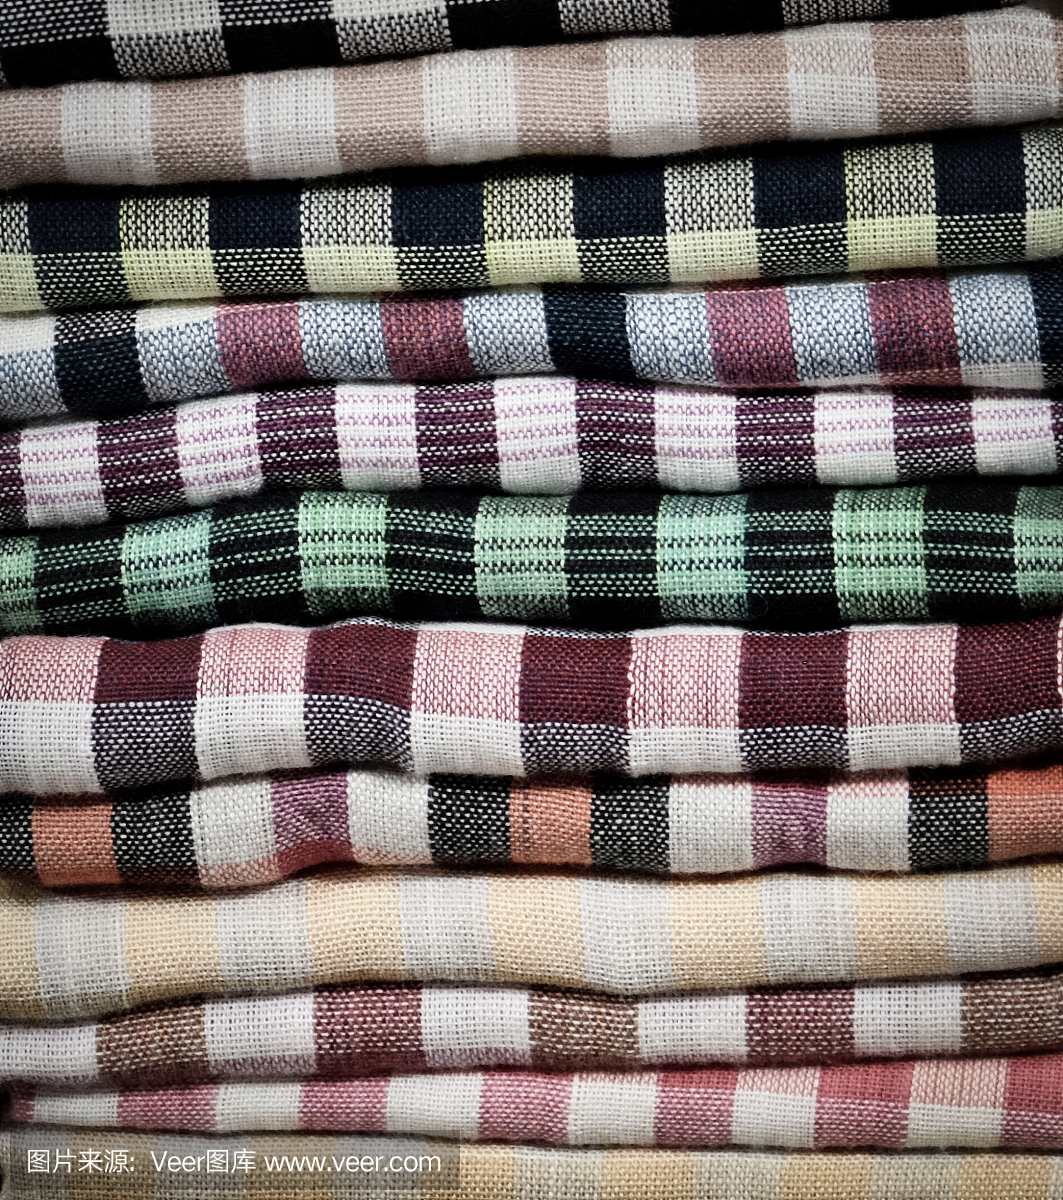 彩色的毛巾,尿布,折叠的纺织品,布作为背景